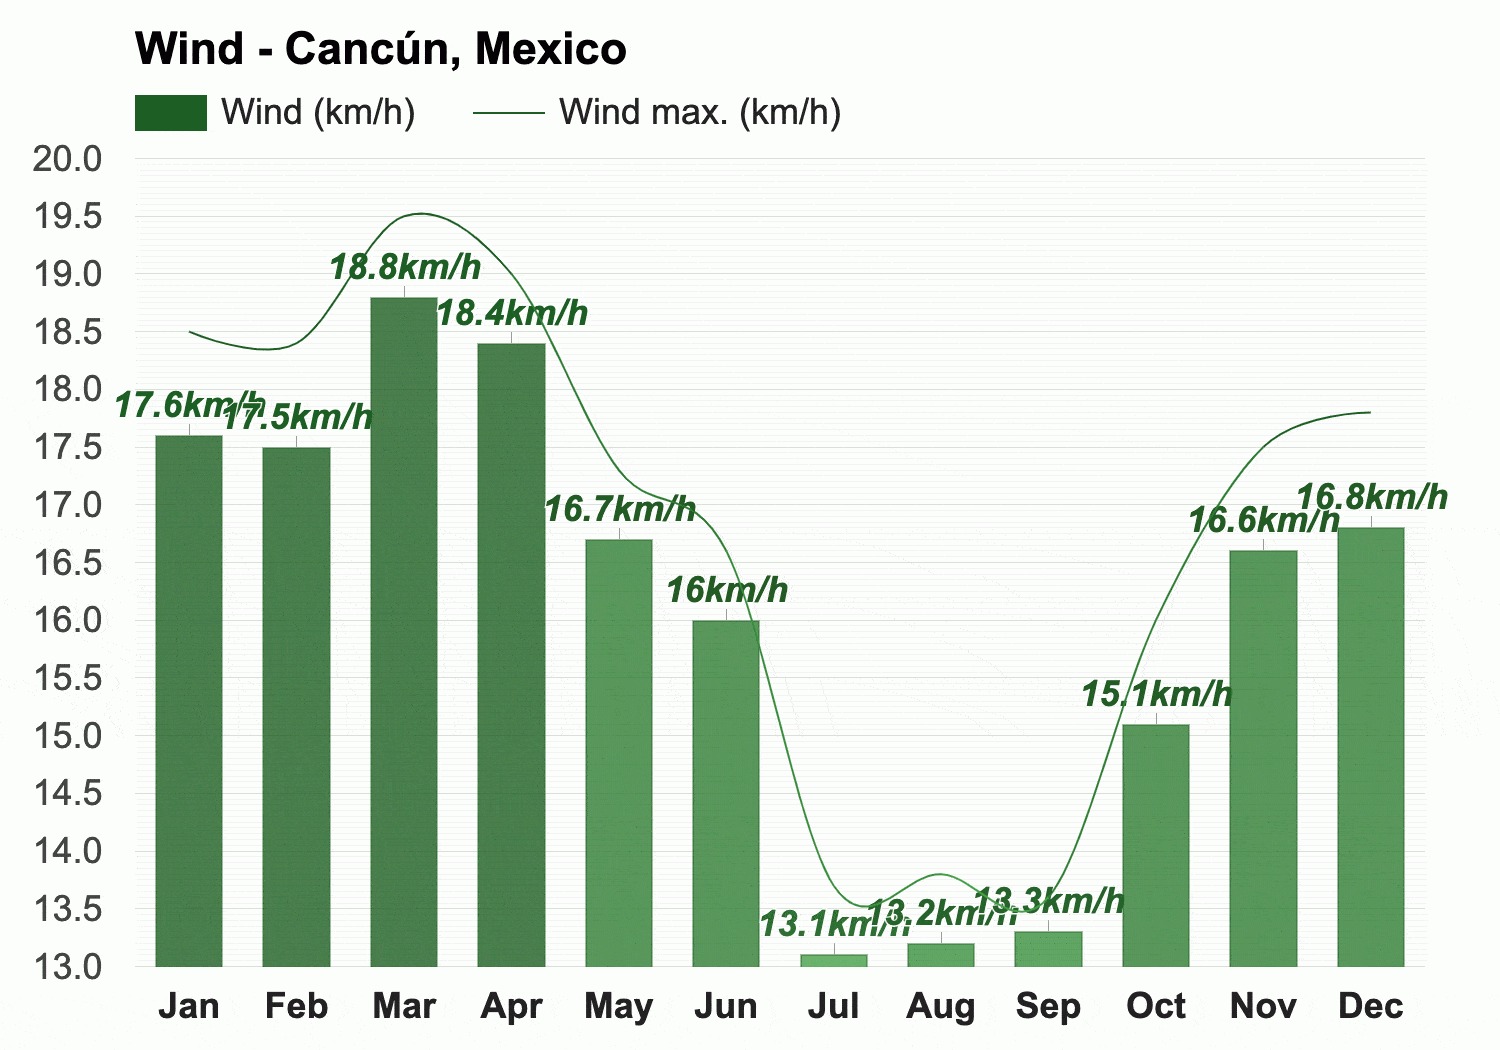 Average Wind Speed Cancun in November